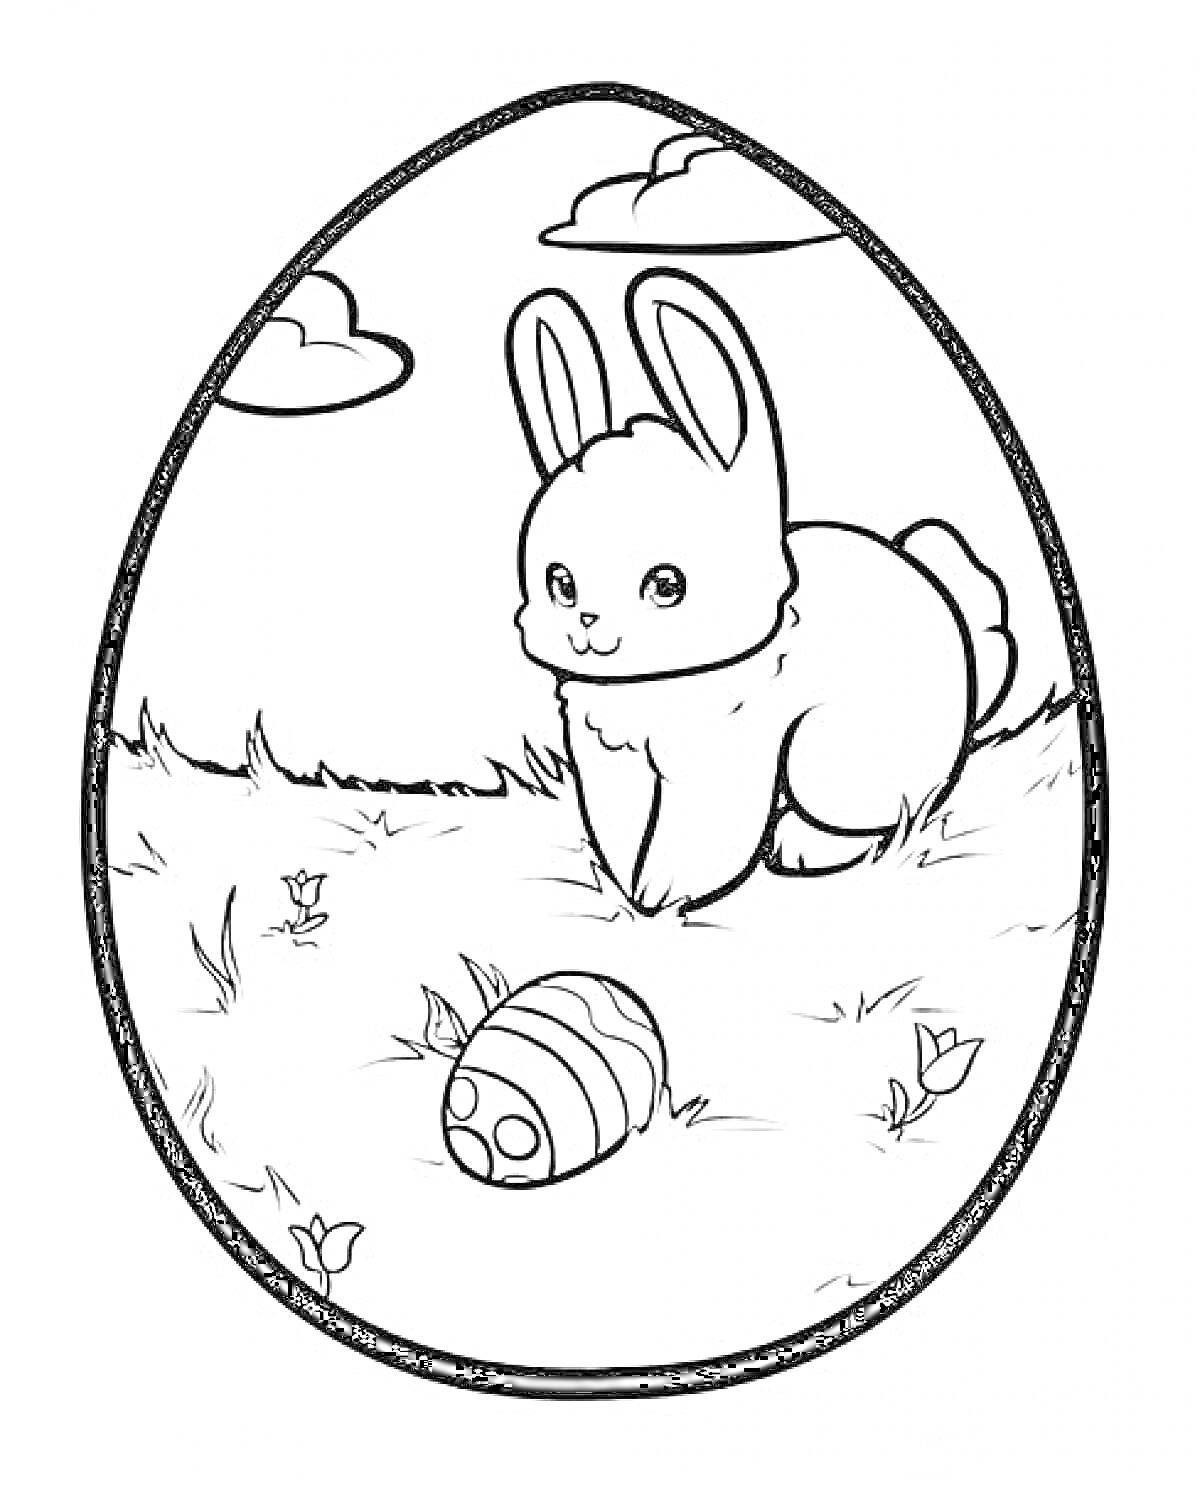 Раскраска Пасхальное яйцо с зайцем и украшенным яйцом на траве под облаками